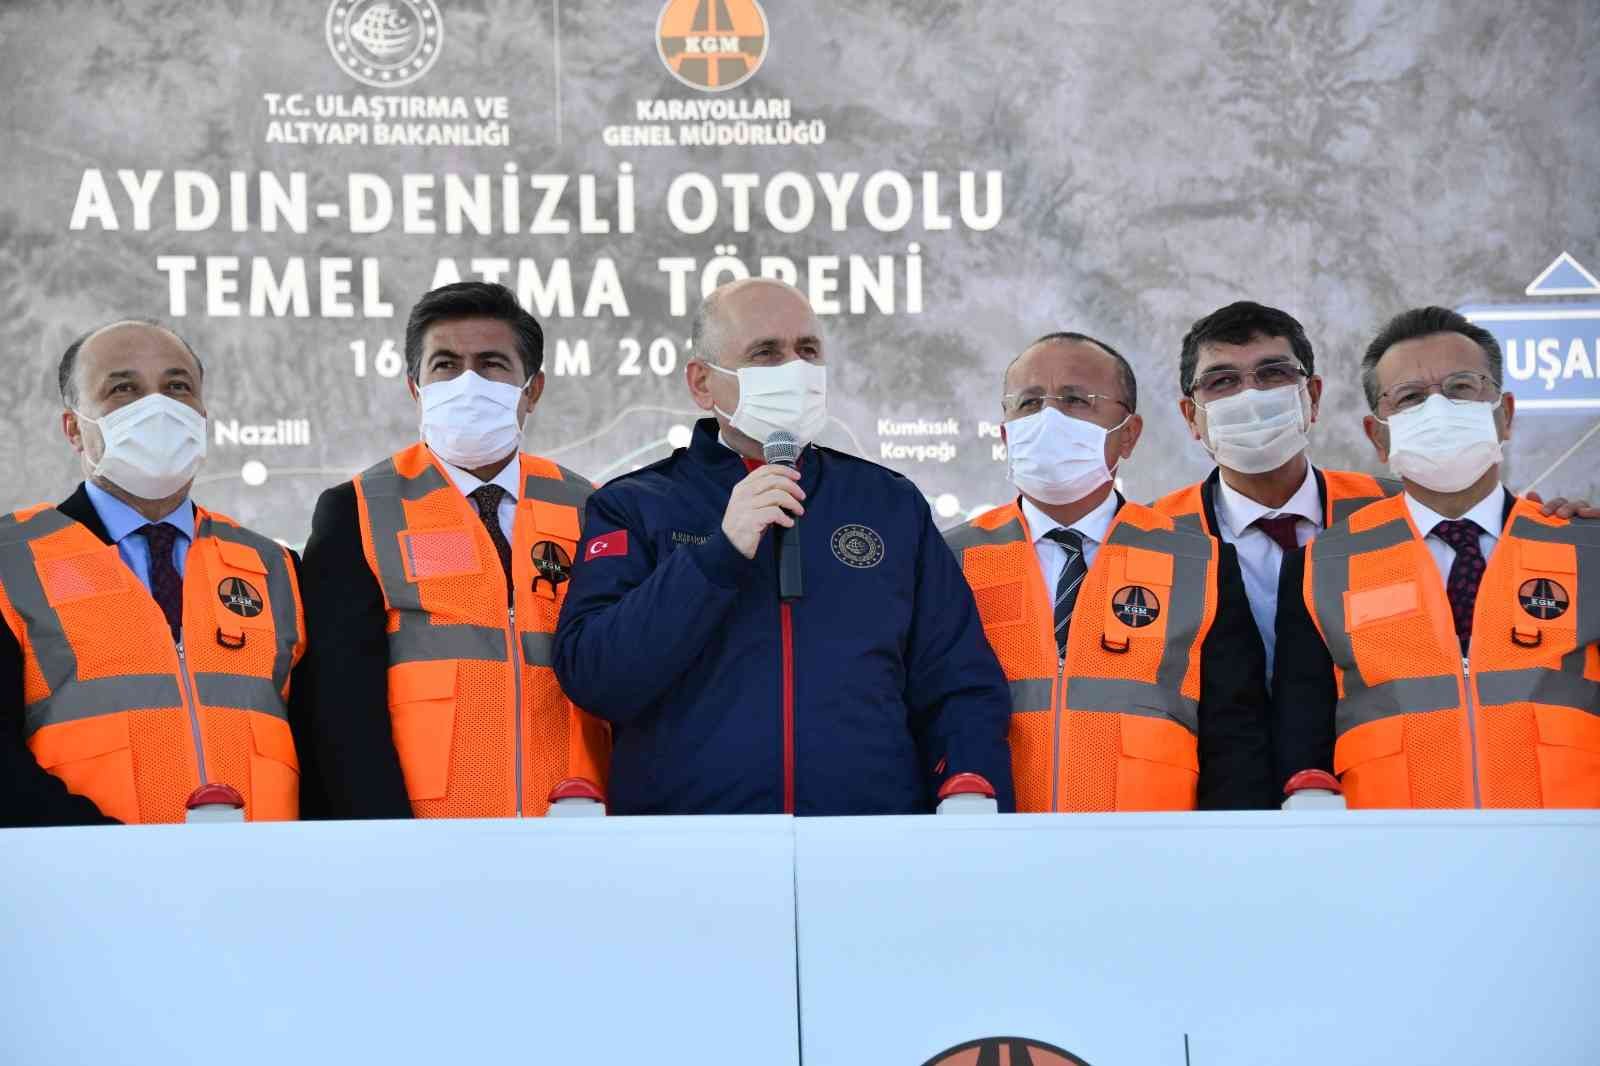 Bakan Karaismailoğlu: “163 kilometre uzunluğundaki Aydın-Denizli otoyolunda çalışmalar sürüyor” #aydin